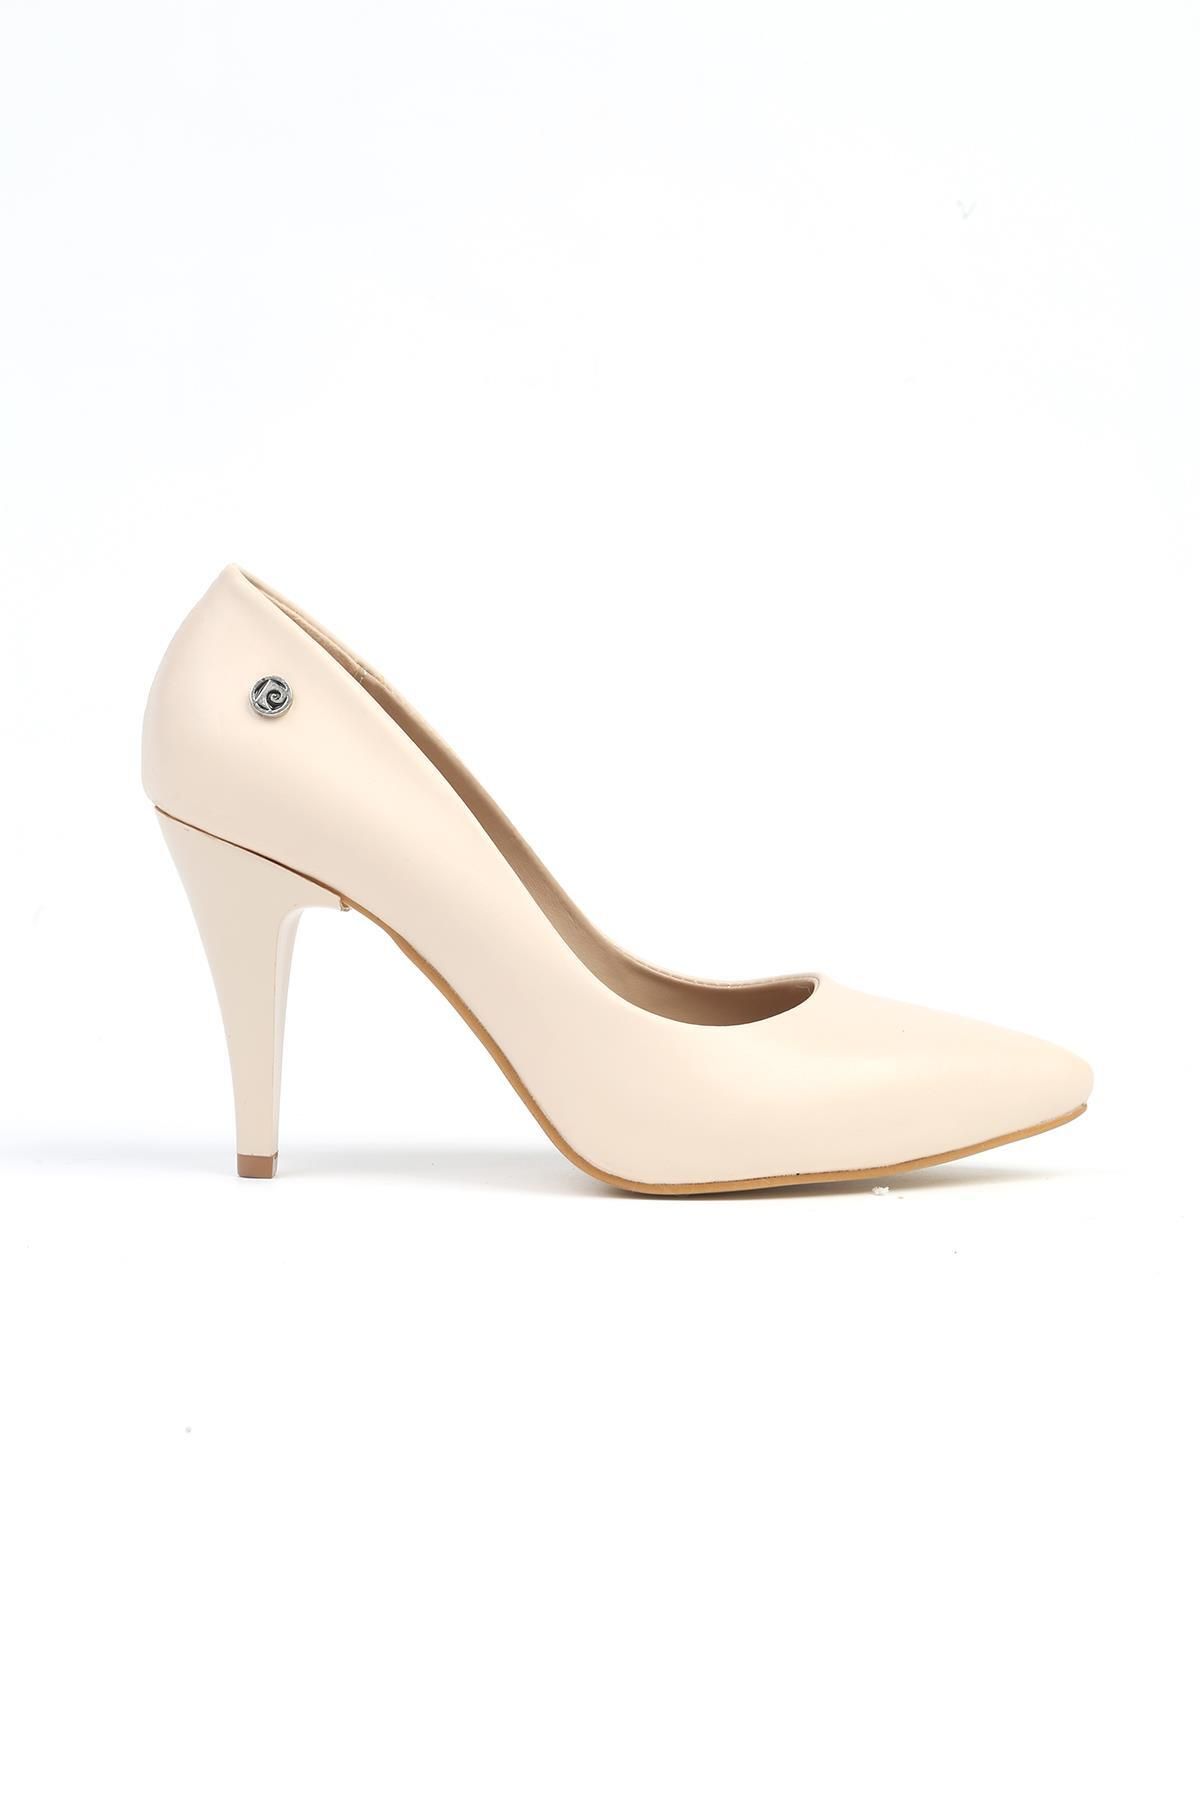 Pierre Cardin ® | PC-52534 - 3592 Krem Cilt - Kadın Topuklu Ayakkabı